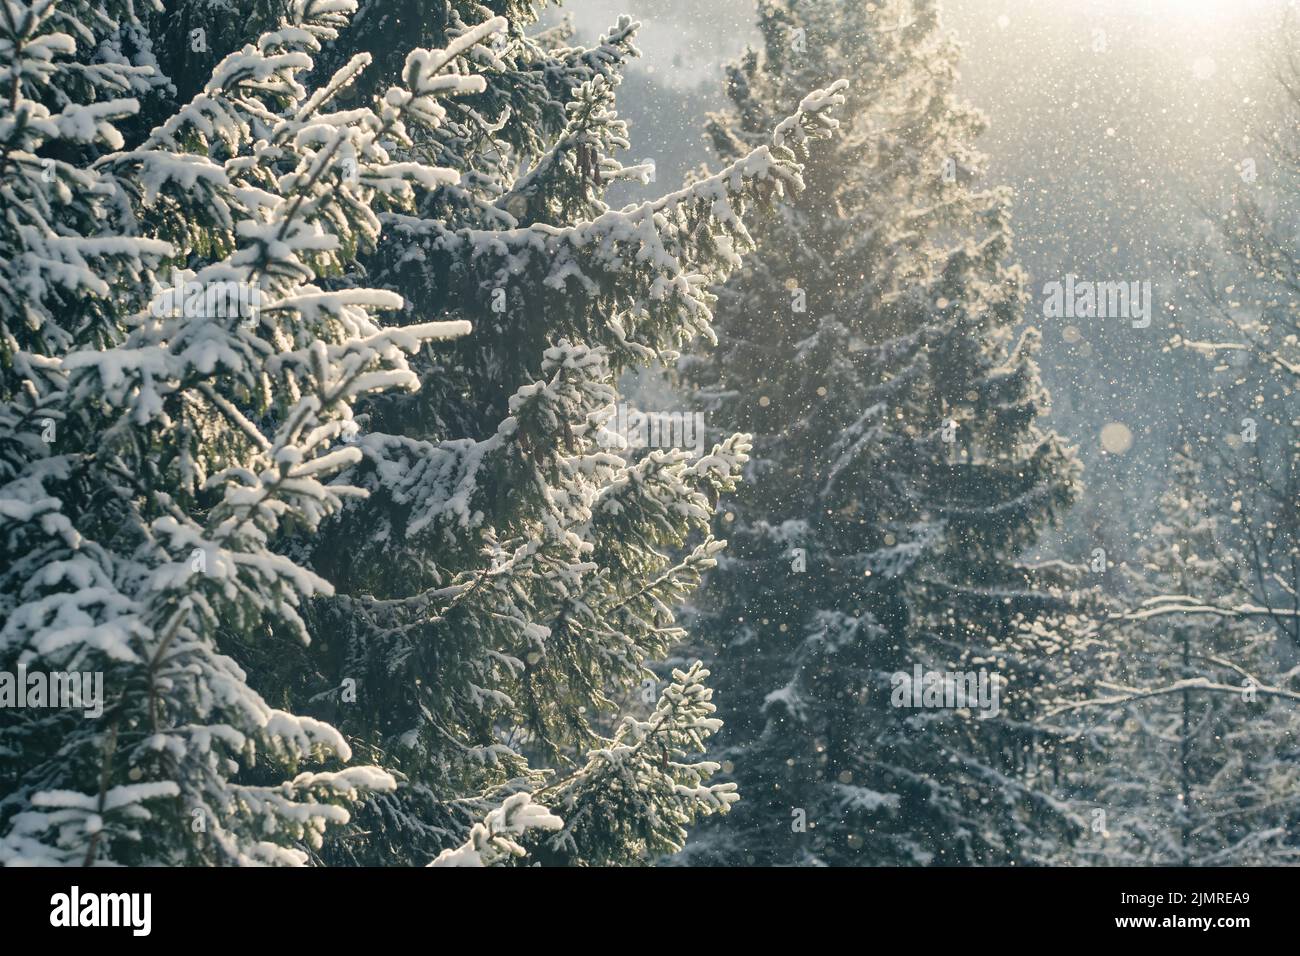 Magnifique paysage d'hiver avec de la neige tombant dans la forêt d'épicéa Banque D'Images